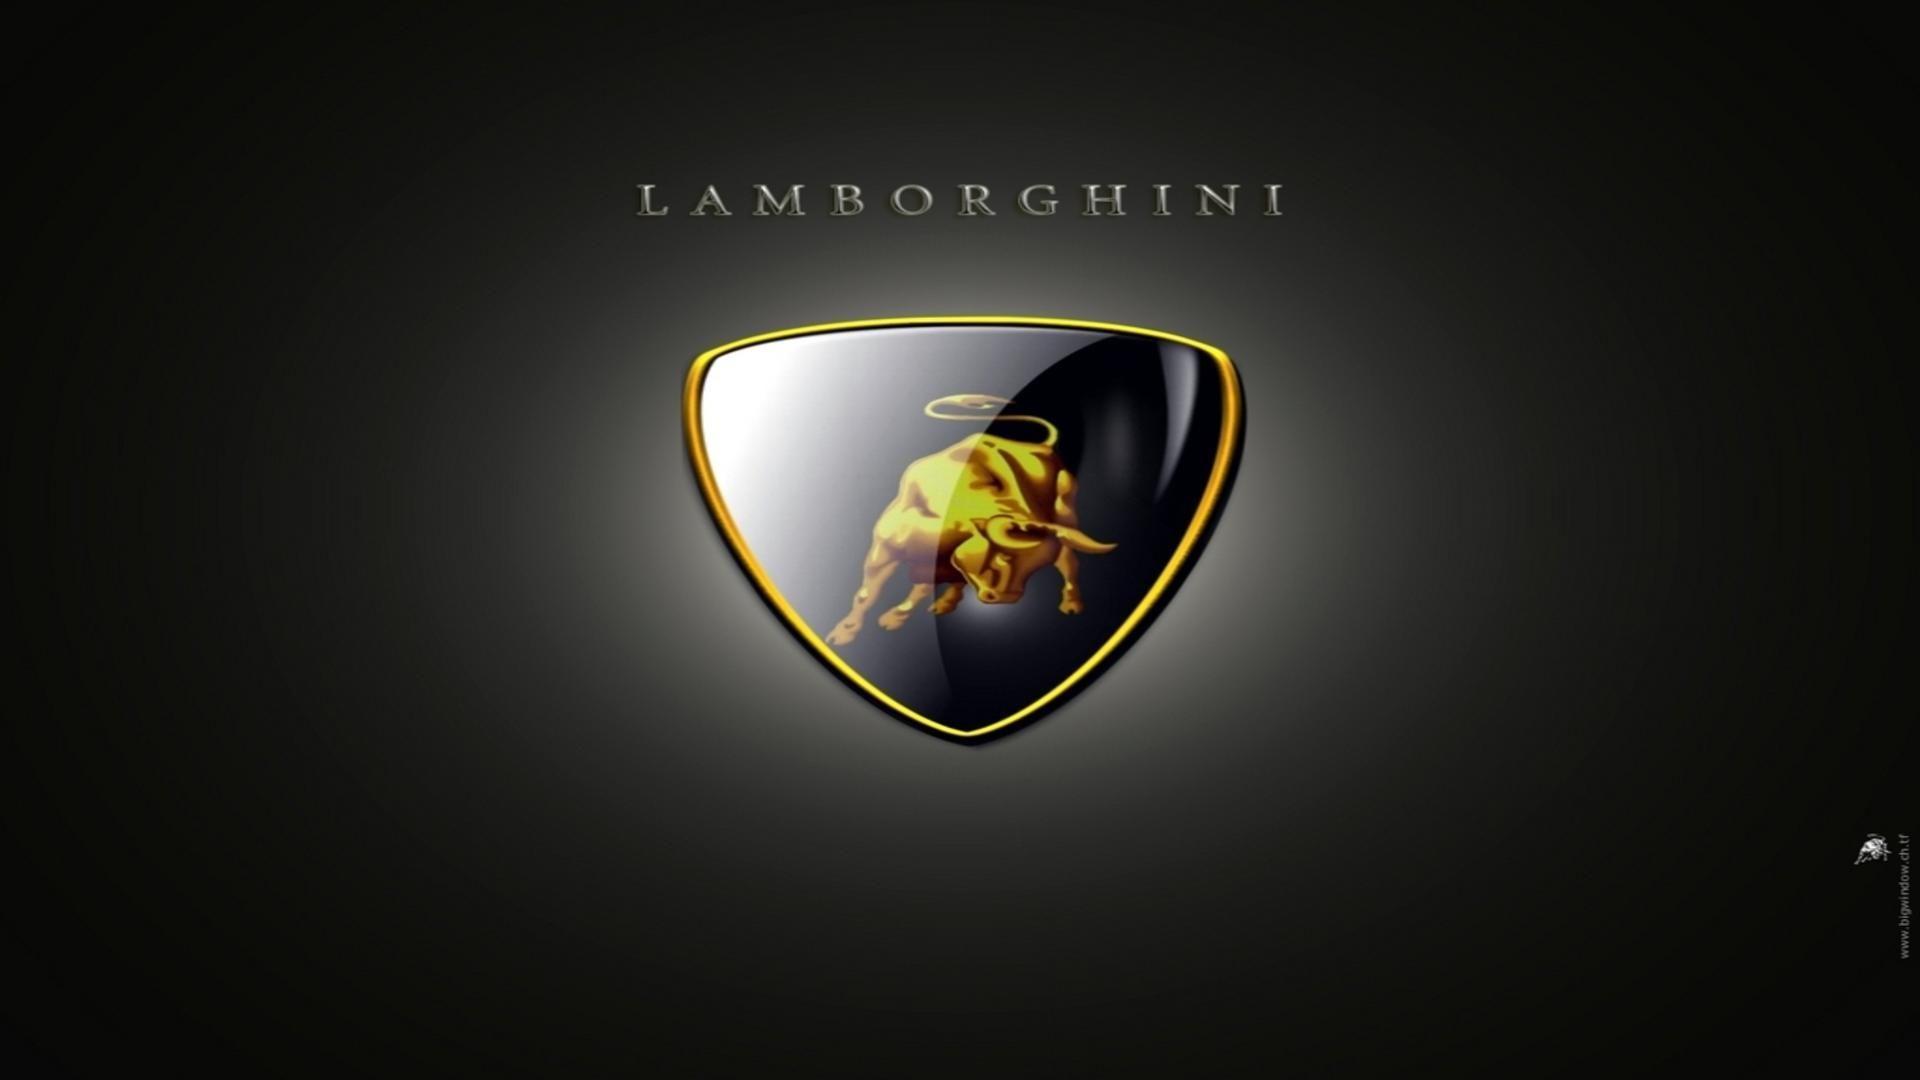 Lamborghini logo on black theme free desktop background